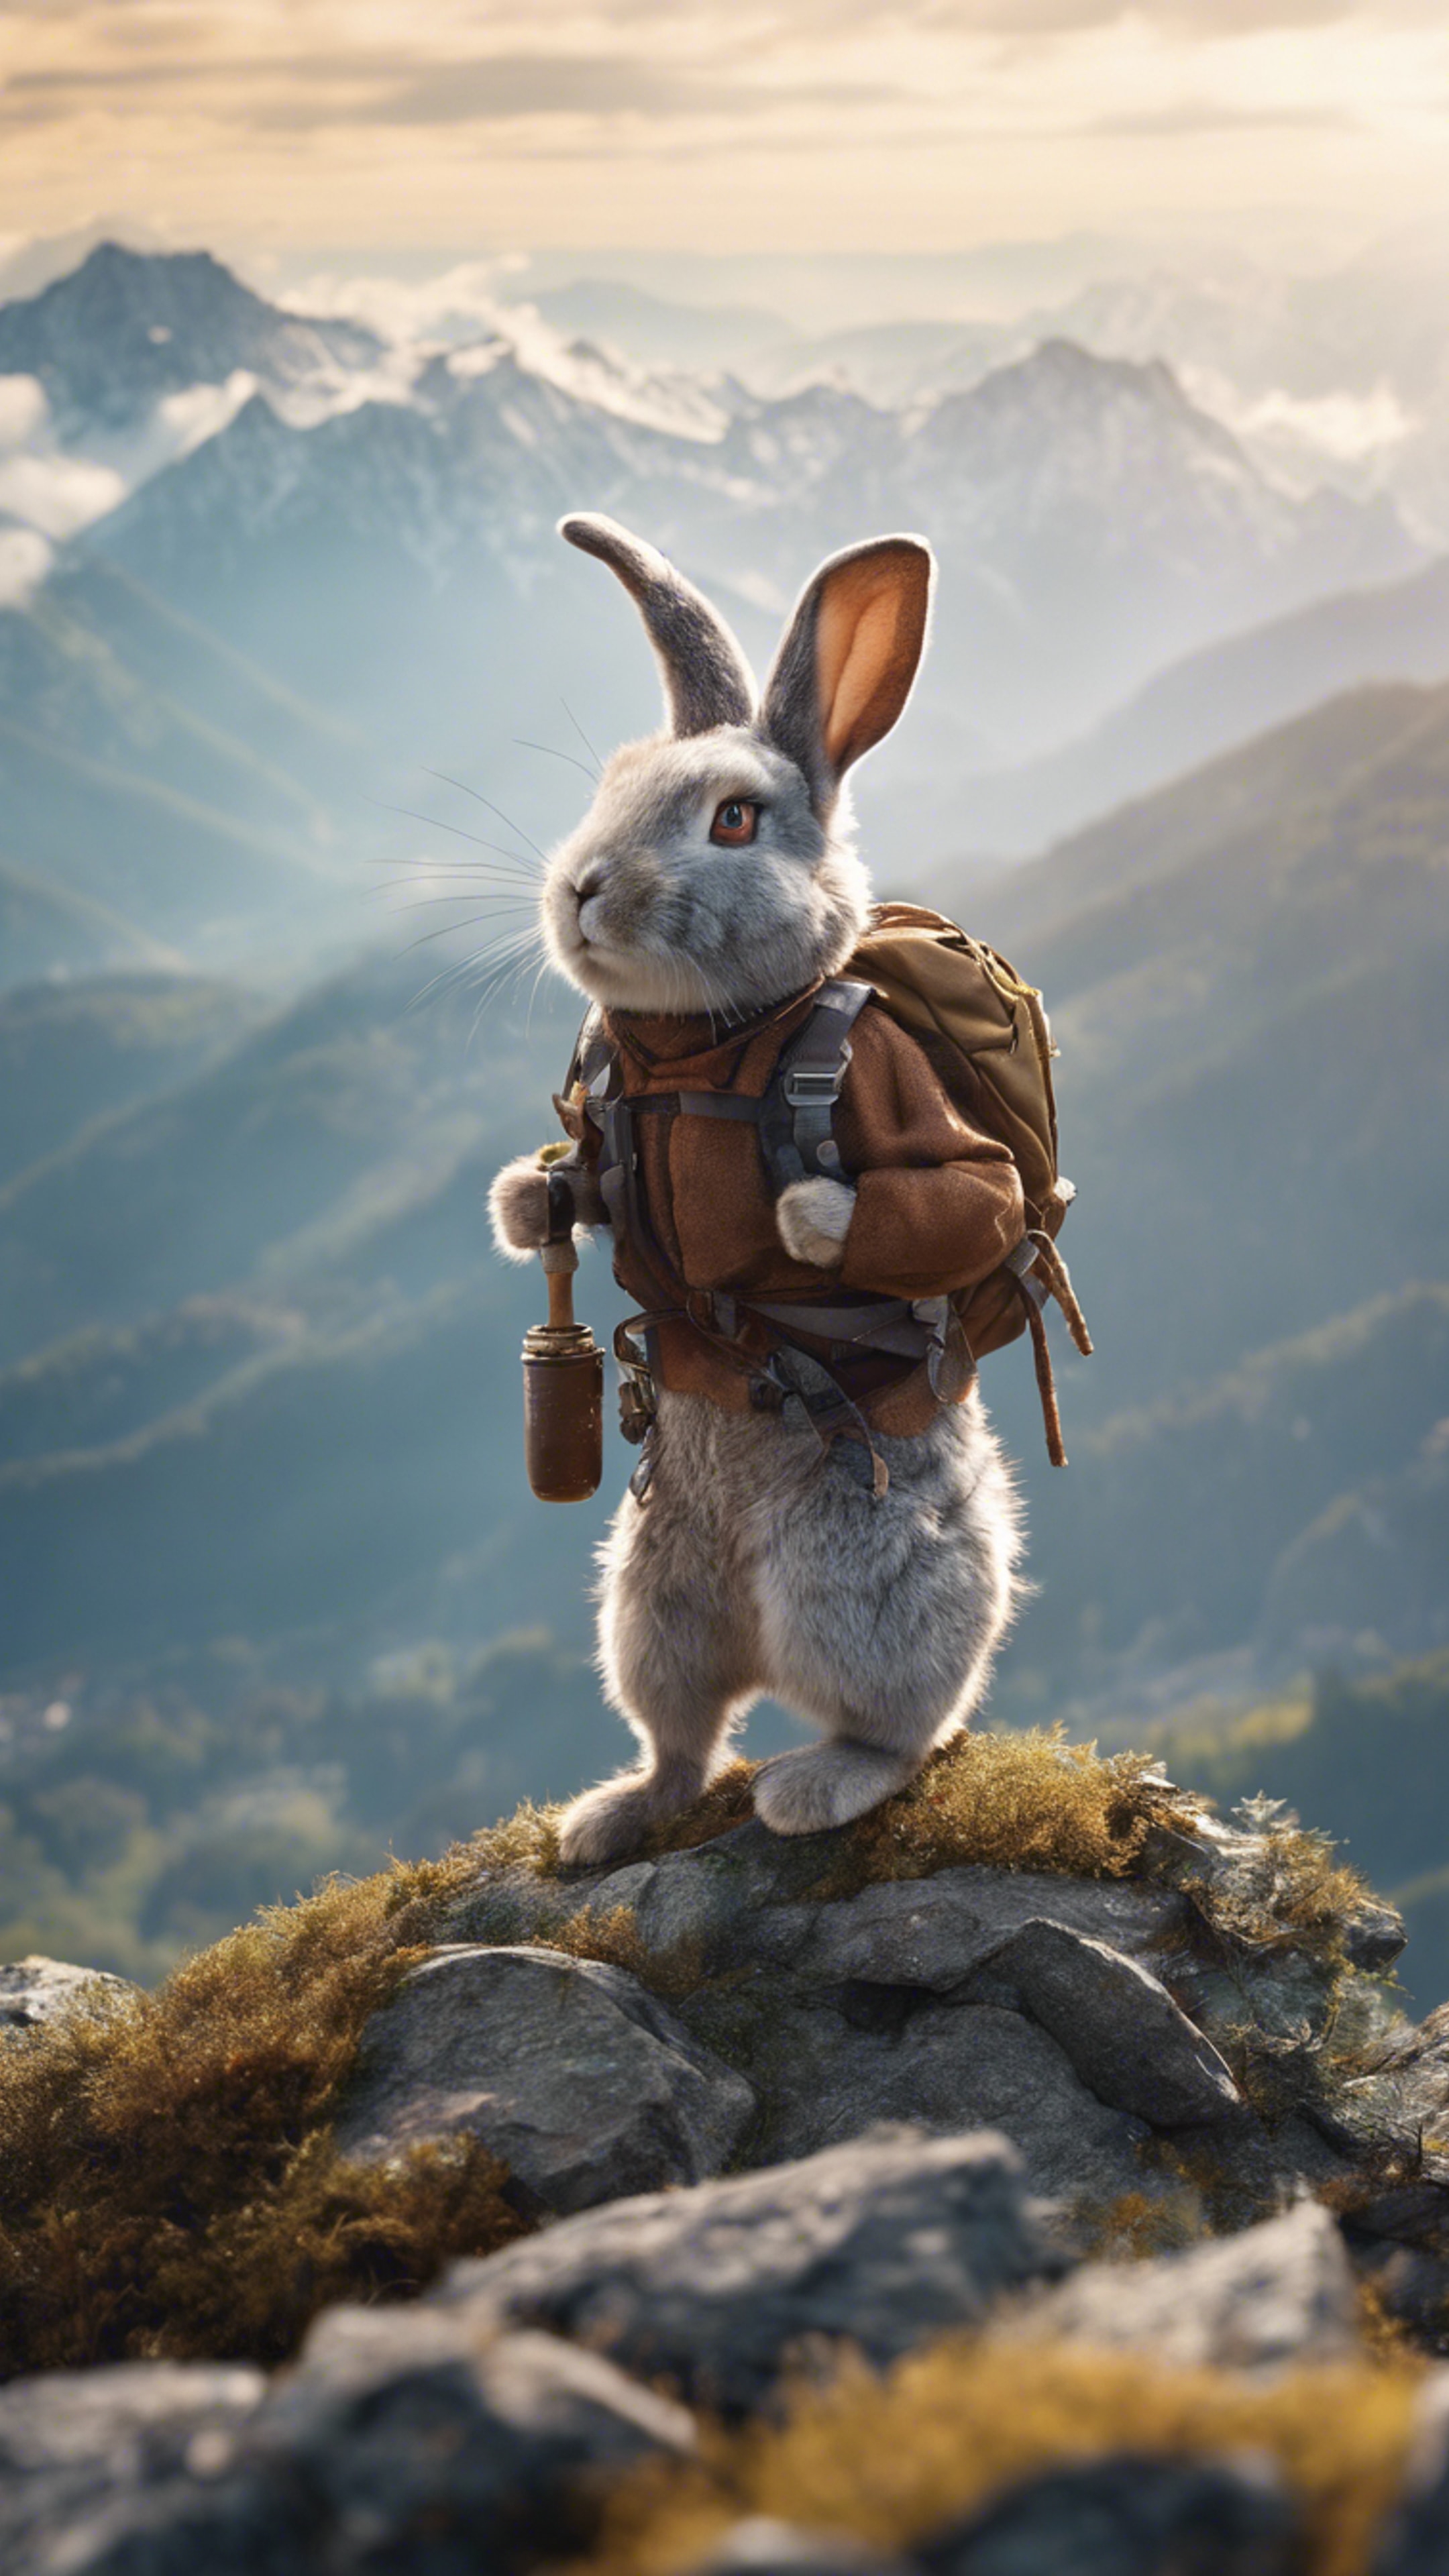 A Rabbit mountaineer conquering a treacherous peak. duvar kağıdı[faadaab6eec04e17a877]